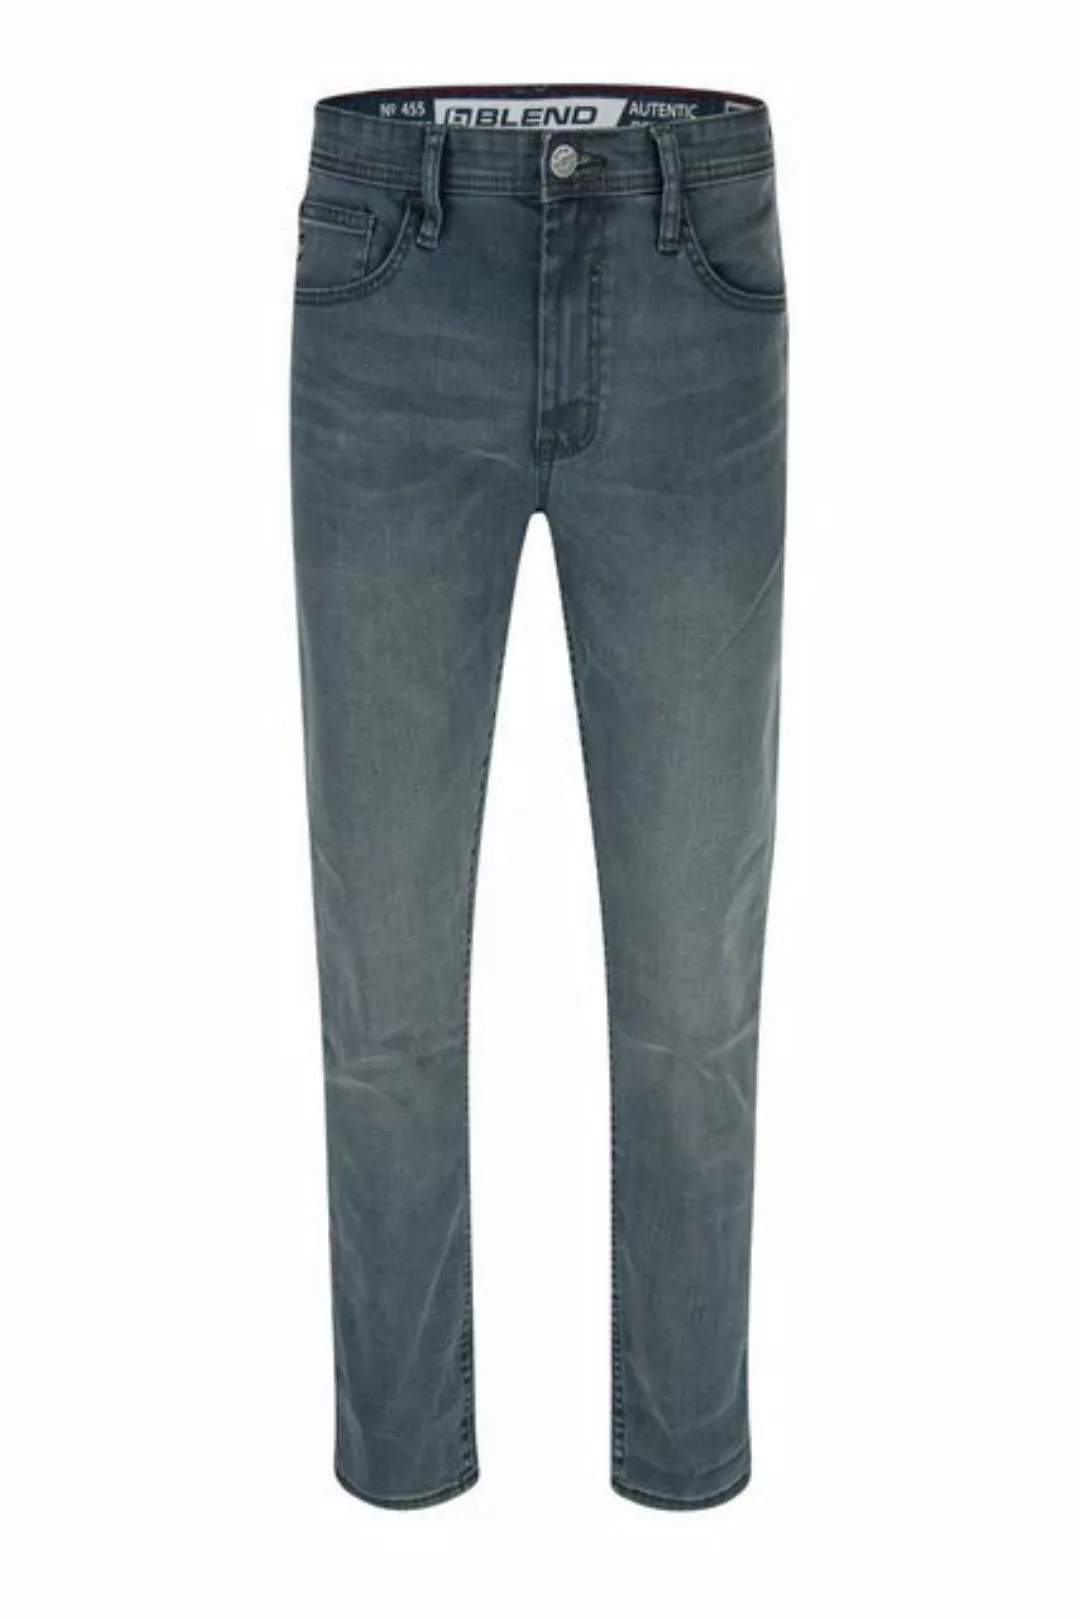 Blend 5-Pocket-Jeans BLEND JEANS TWISTER light grey denim coated 20711015.2 günstig online kaufen